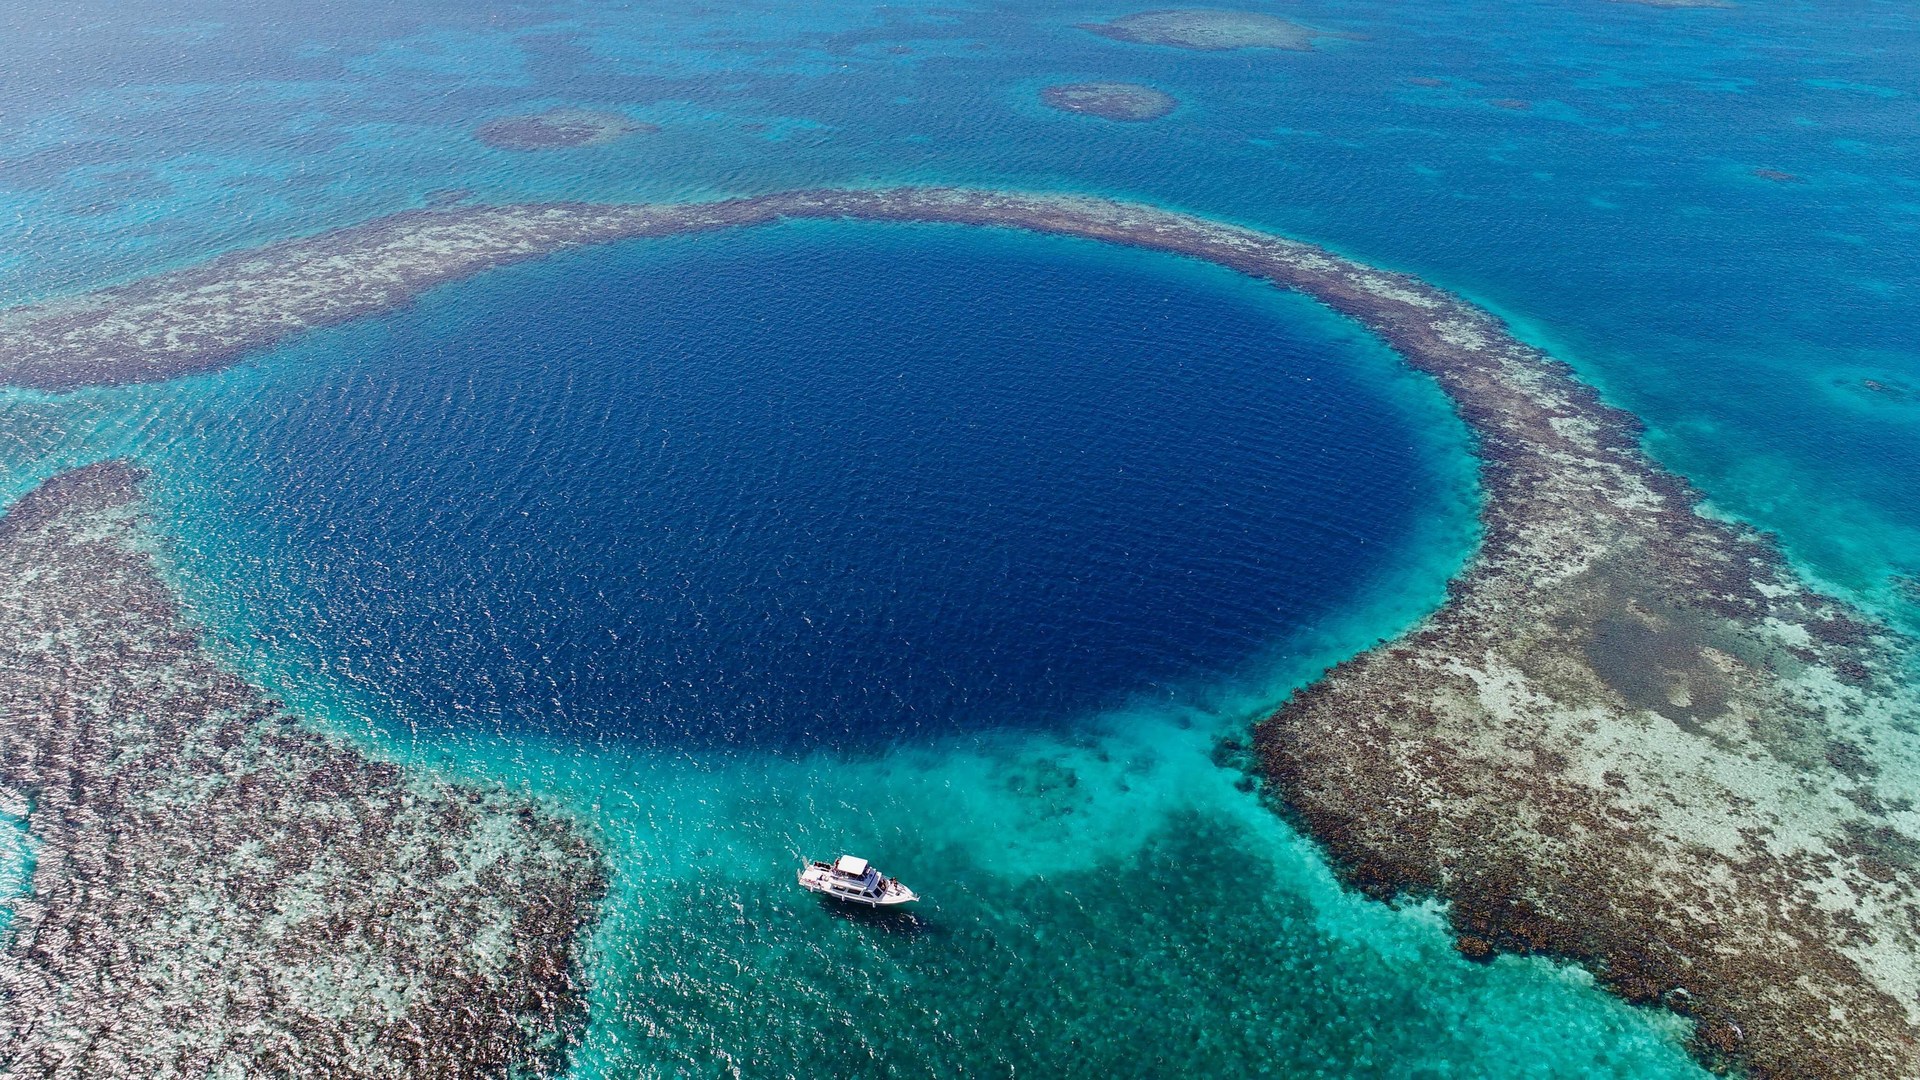 Самое глубокое место. Белизский Барьерный риф и большая голубая дыра. Большая голубая дыра, Лайтхаус-риф. Барьерный риф Белиз. Большая голубая дыра Белиз.